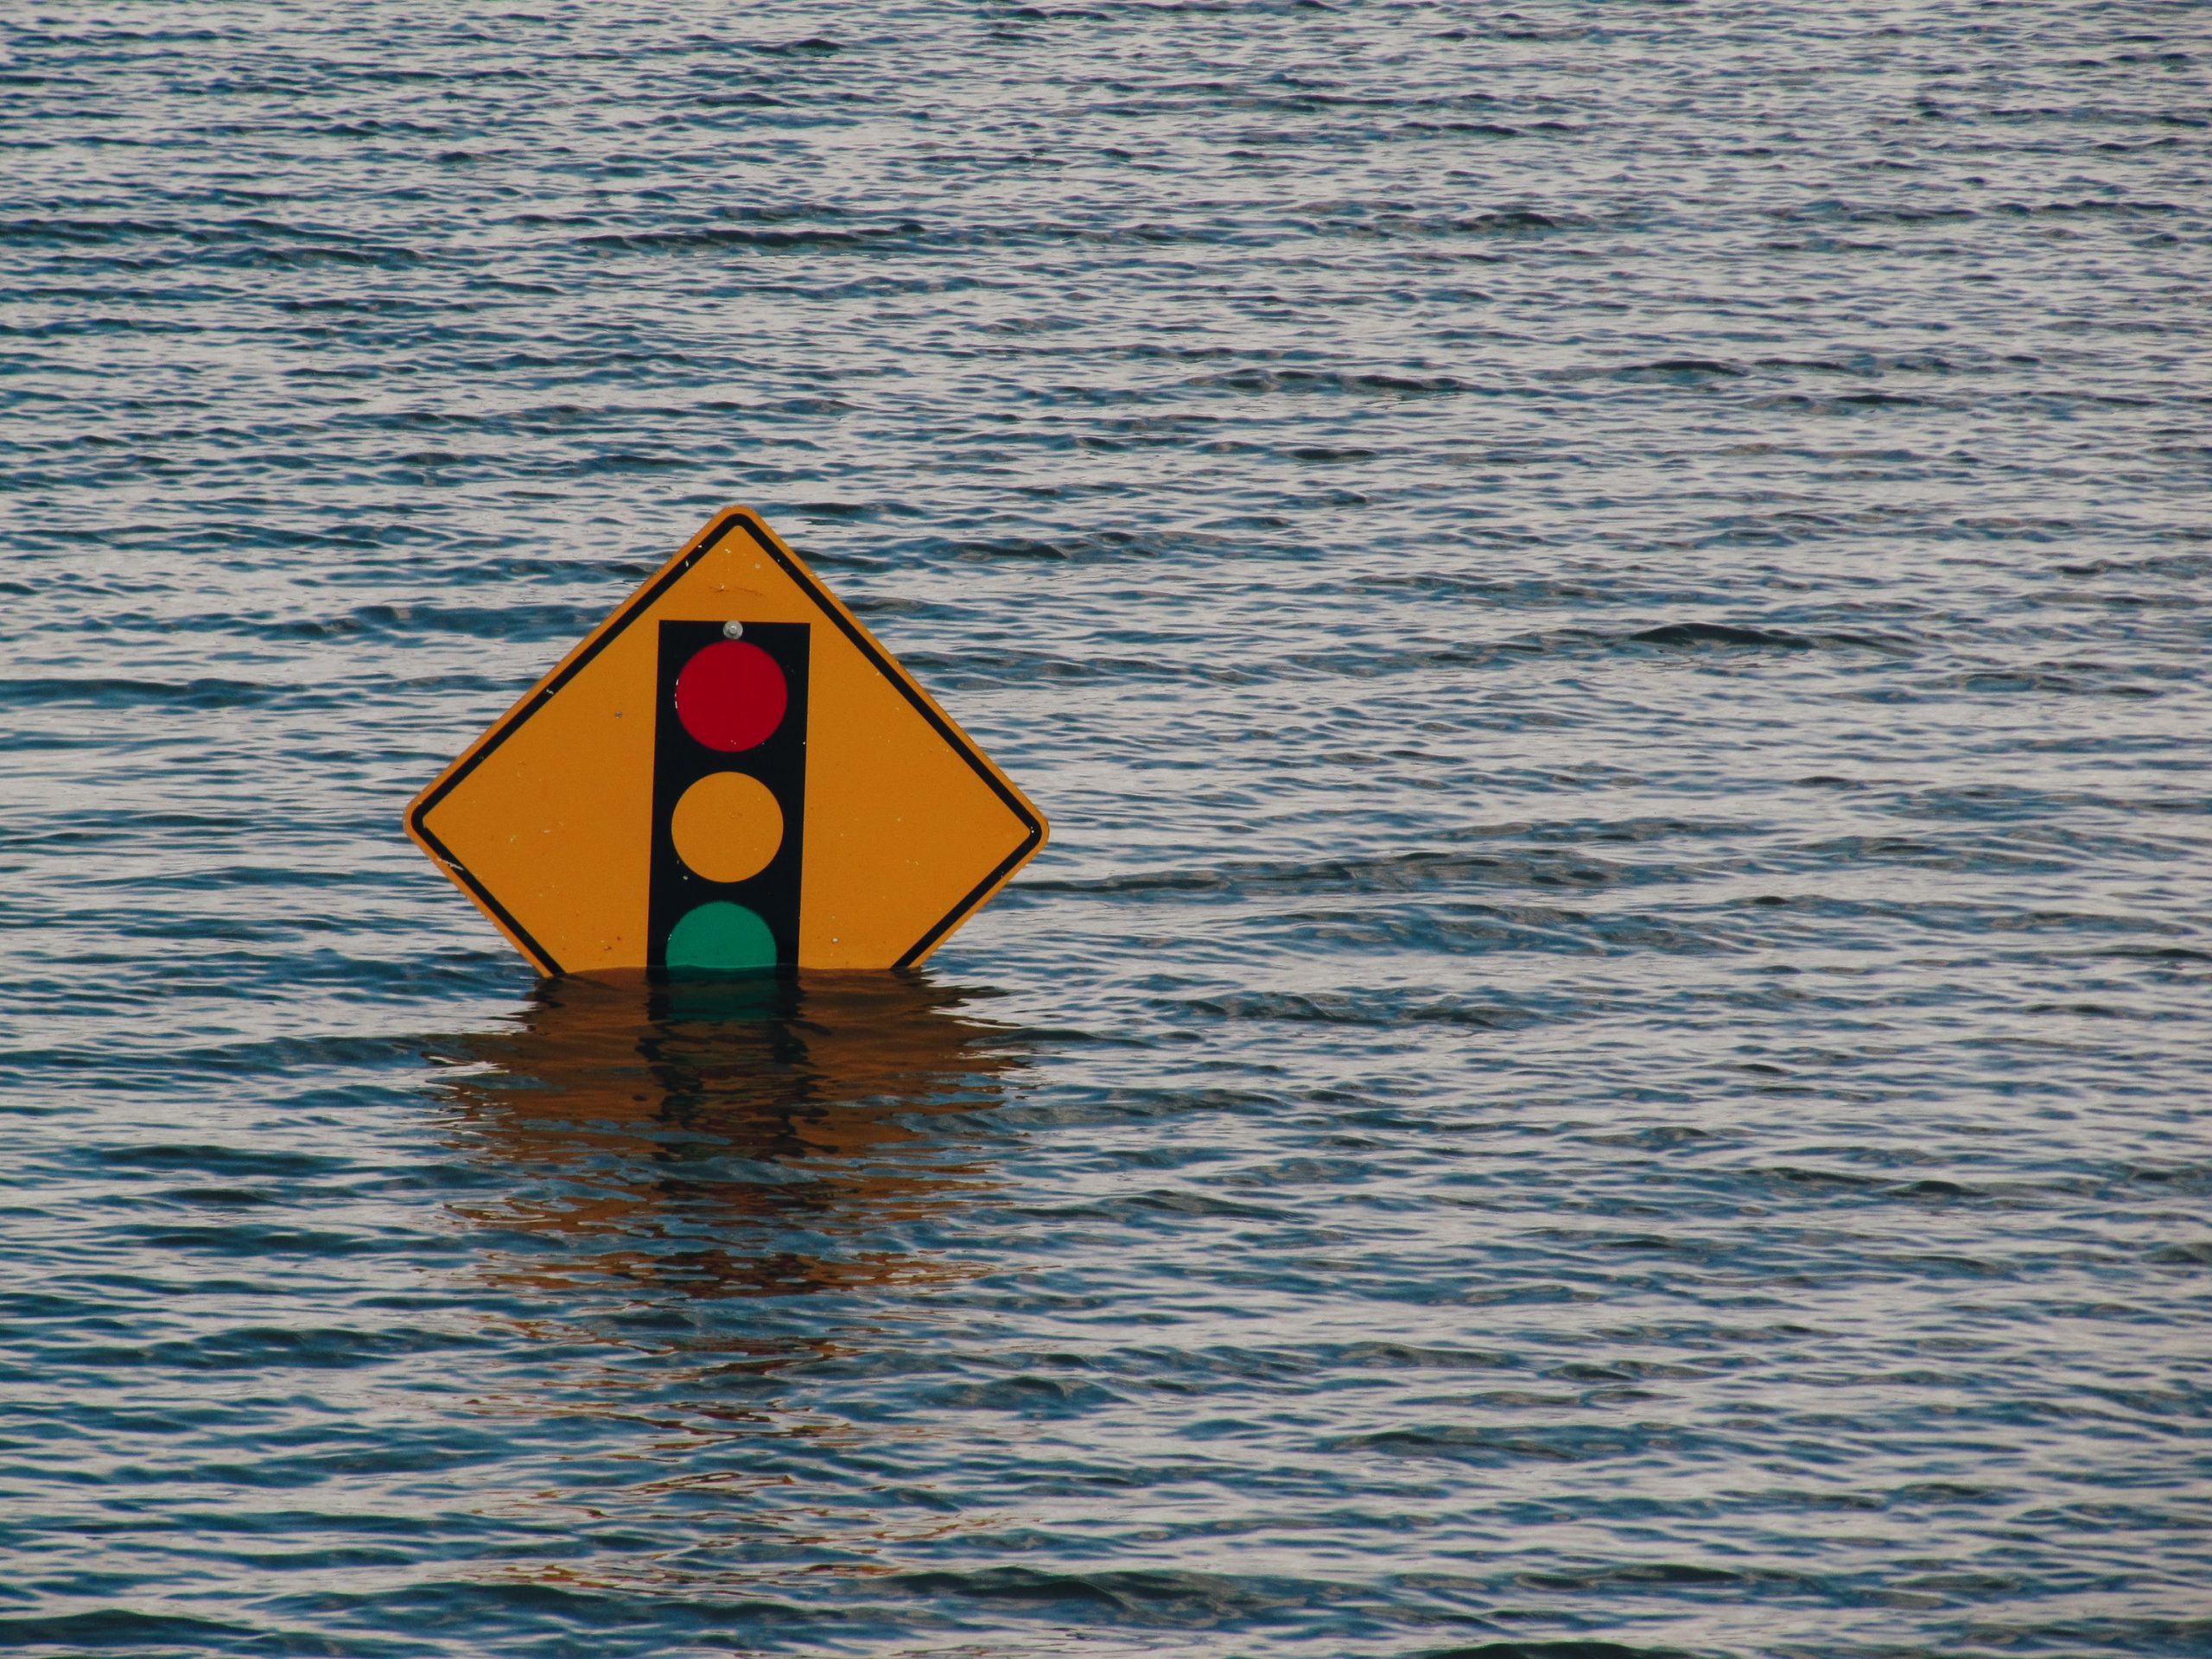 traffic light sign till green light under water, flooded street